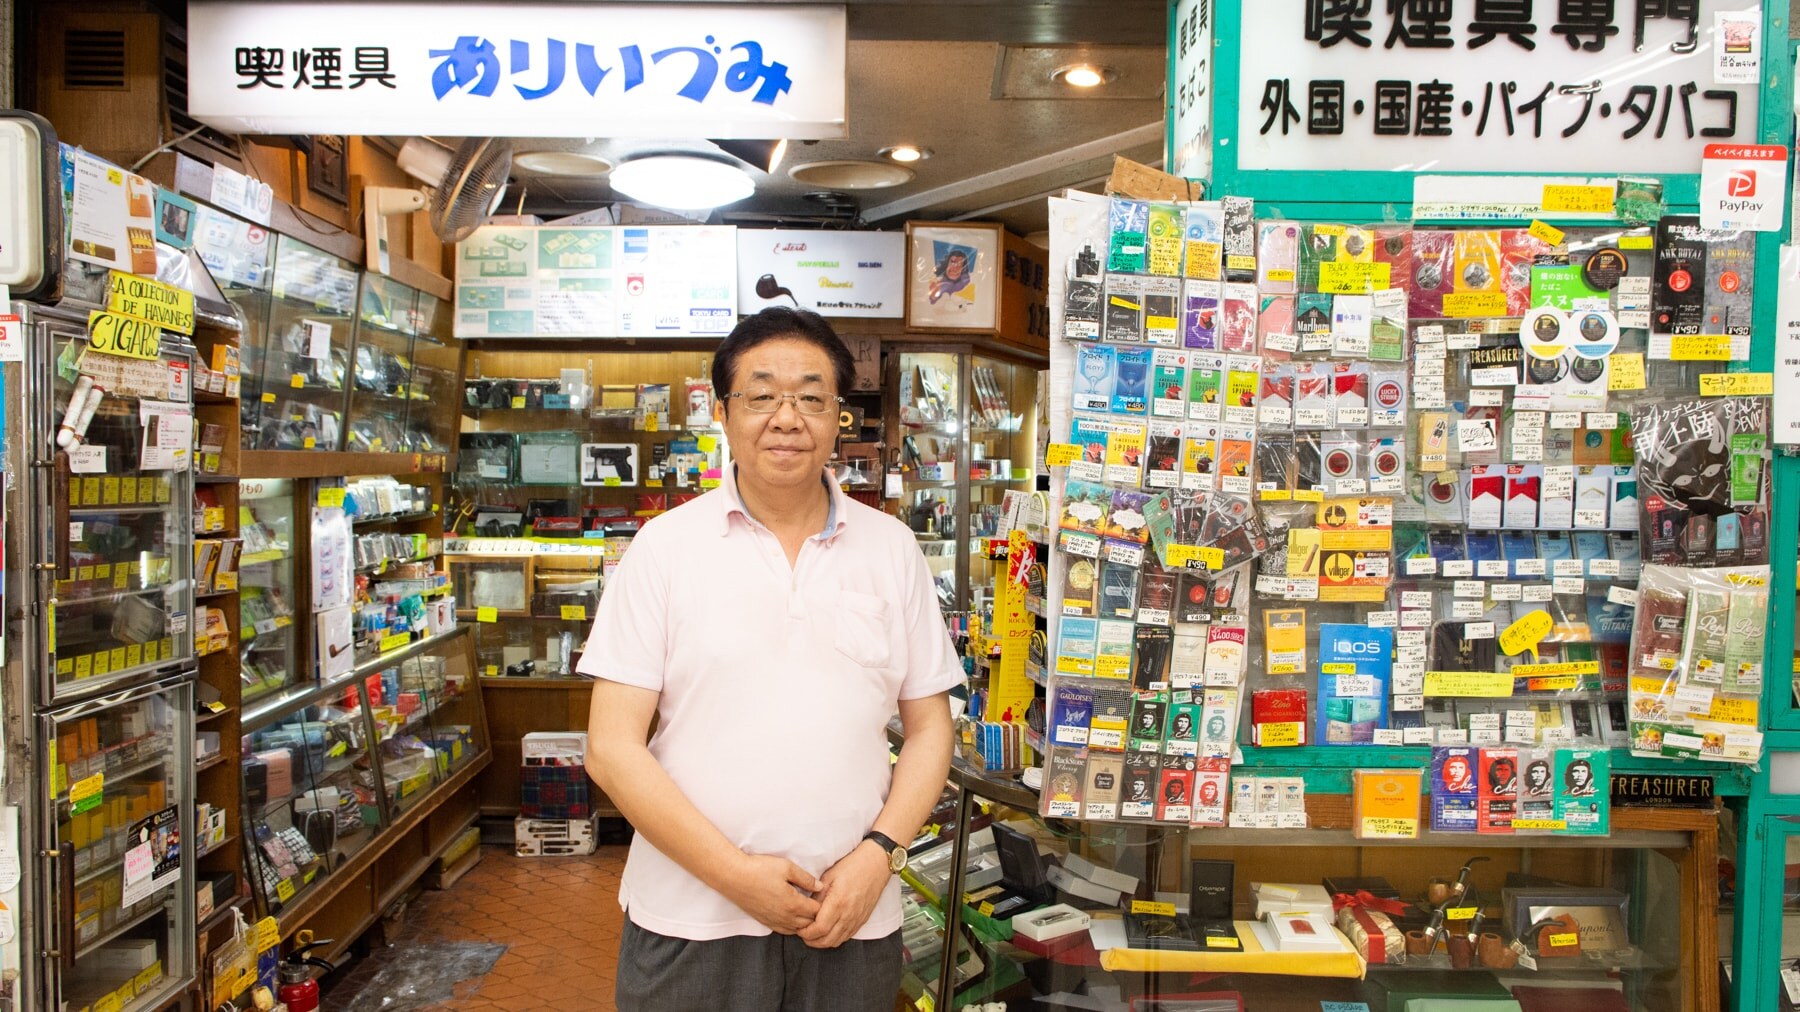 大改装で変わる 渋谷地下街 の知られざる歴史 街 住まい 東洋経済オンライン 社会をよくする経済ニュース